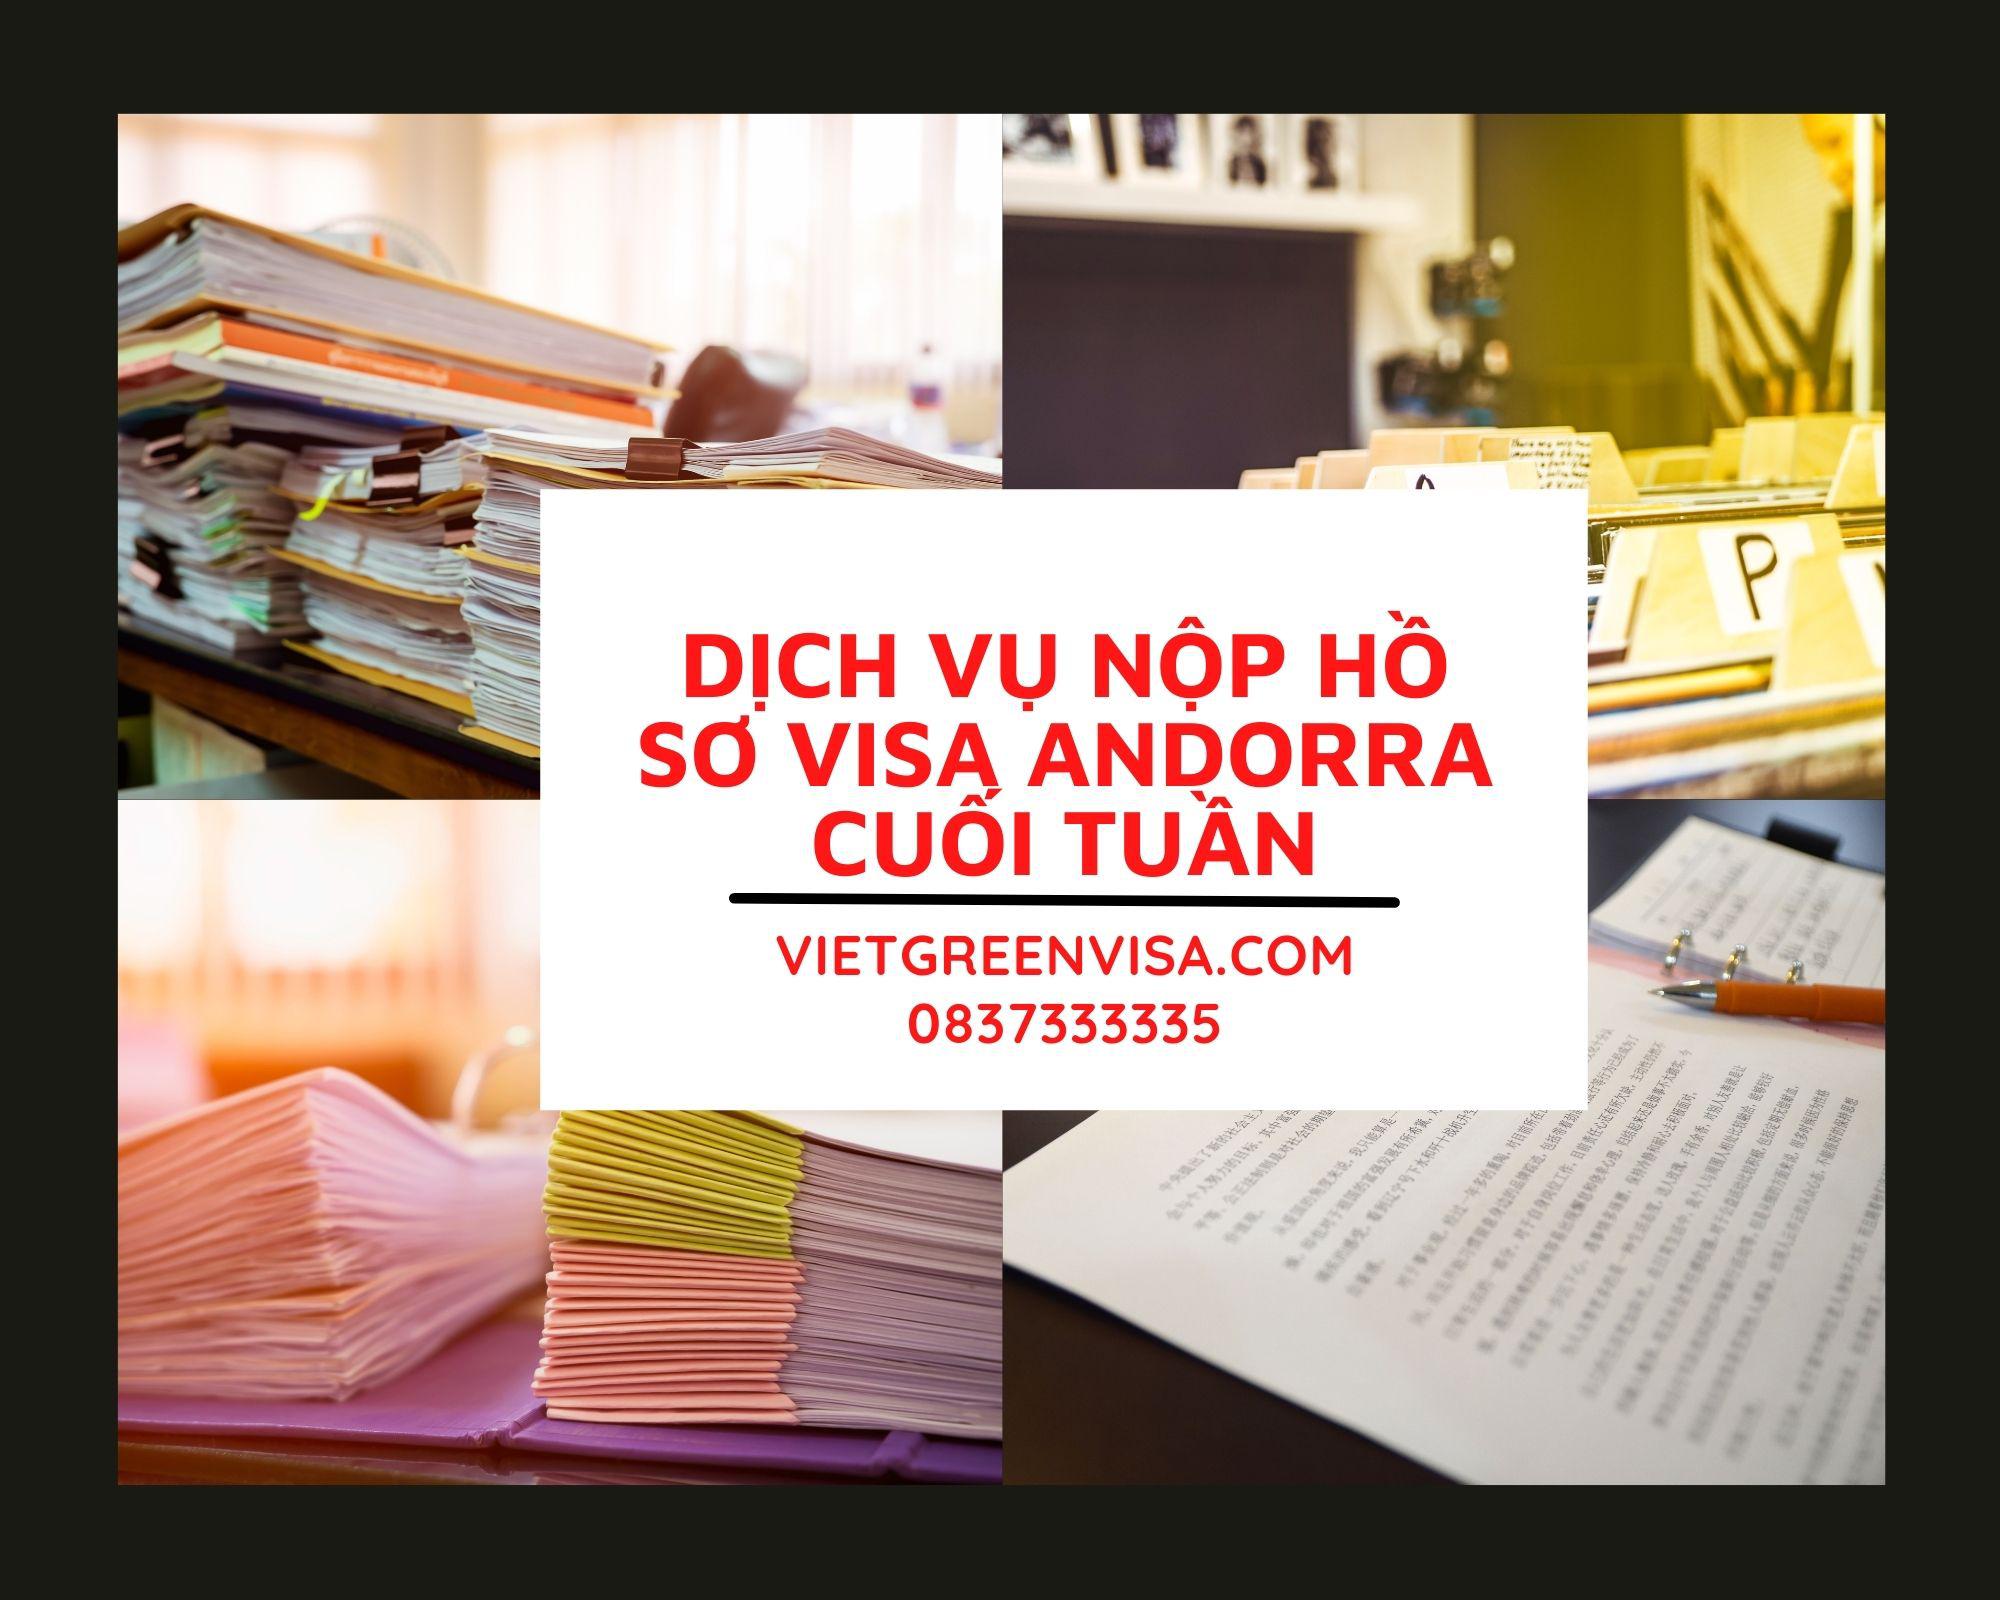 Dịch vụ nộp hồ sơ - tư vấn visa Andorra Thứ 7 cuối tuần